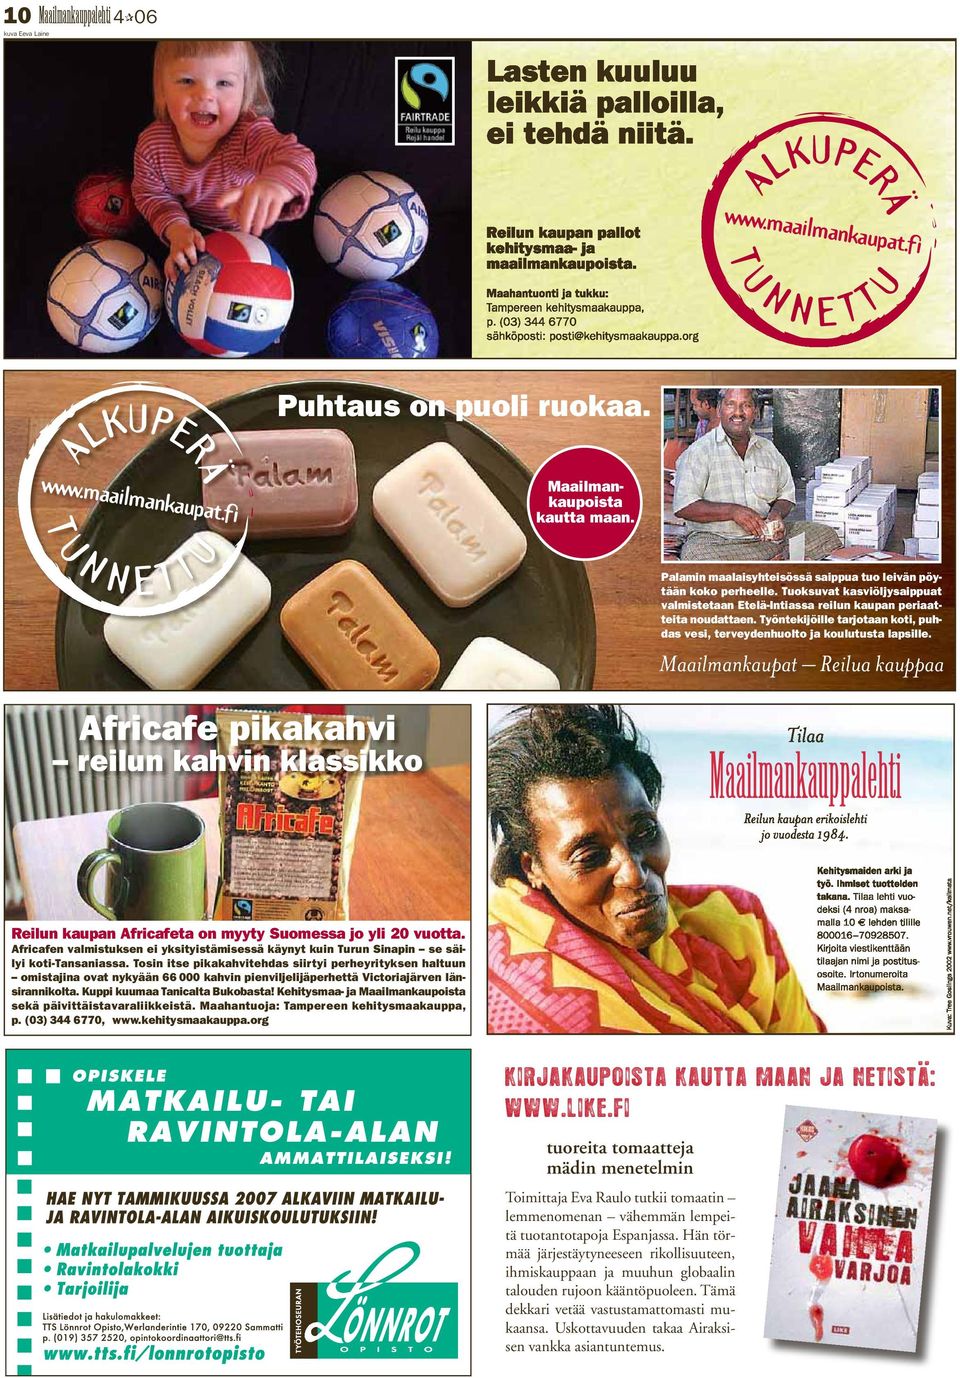 Africafe pikakahvi reilun kahvin klassikko Maailmankauppalehti Reilun kaupan Africafeta on myyty Suomessa jo yli 20 vuotta.